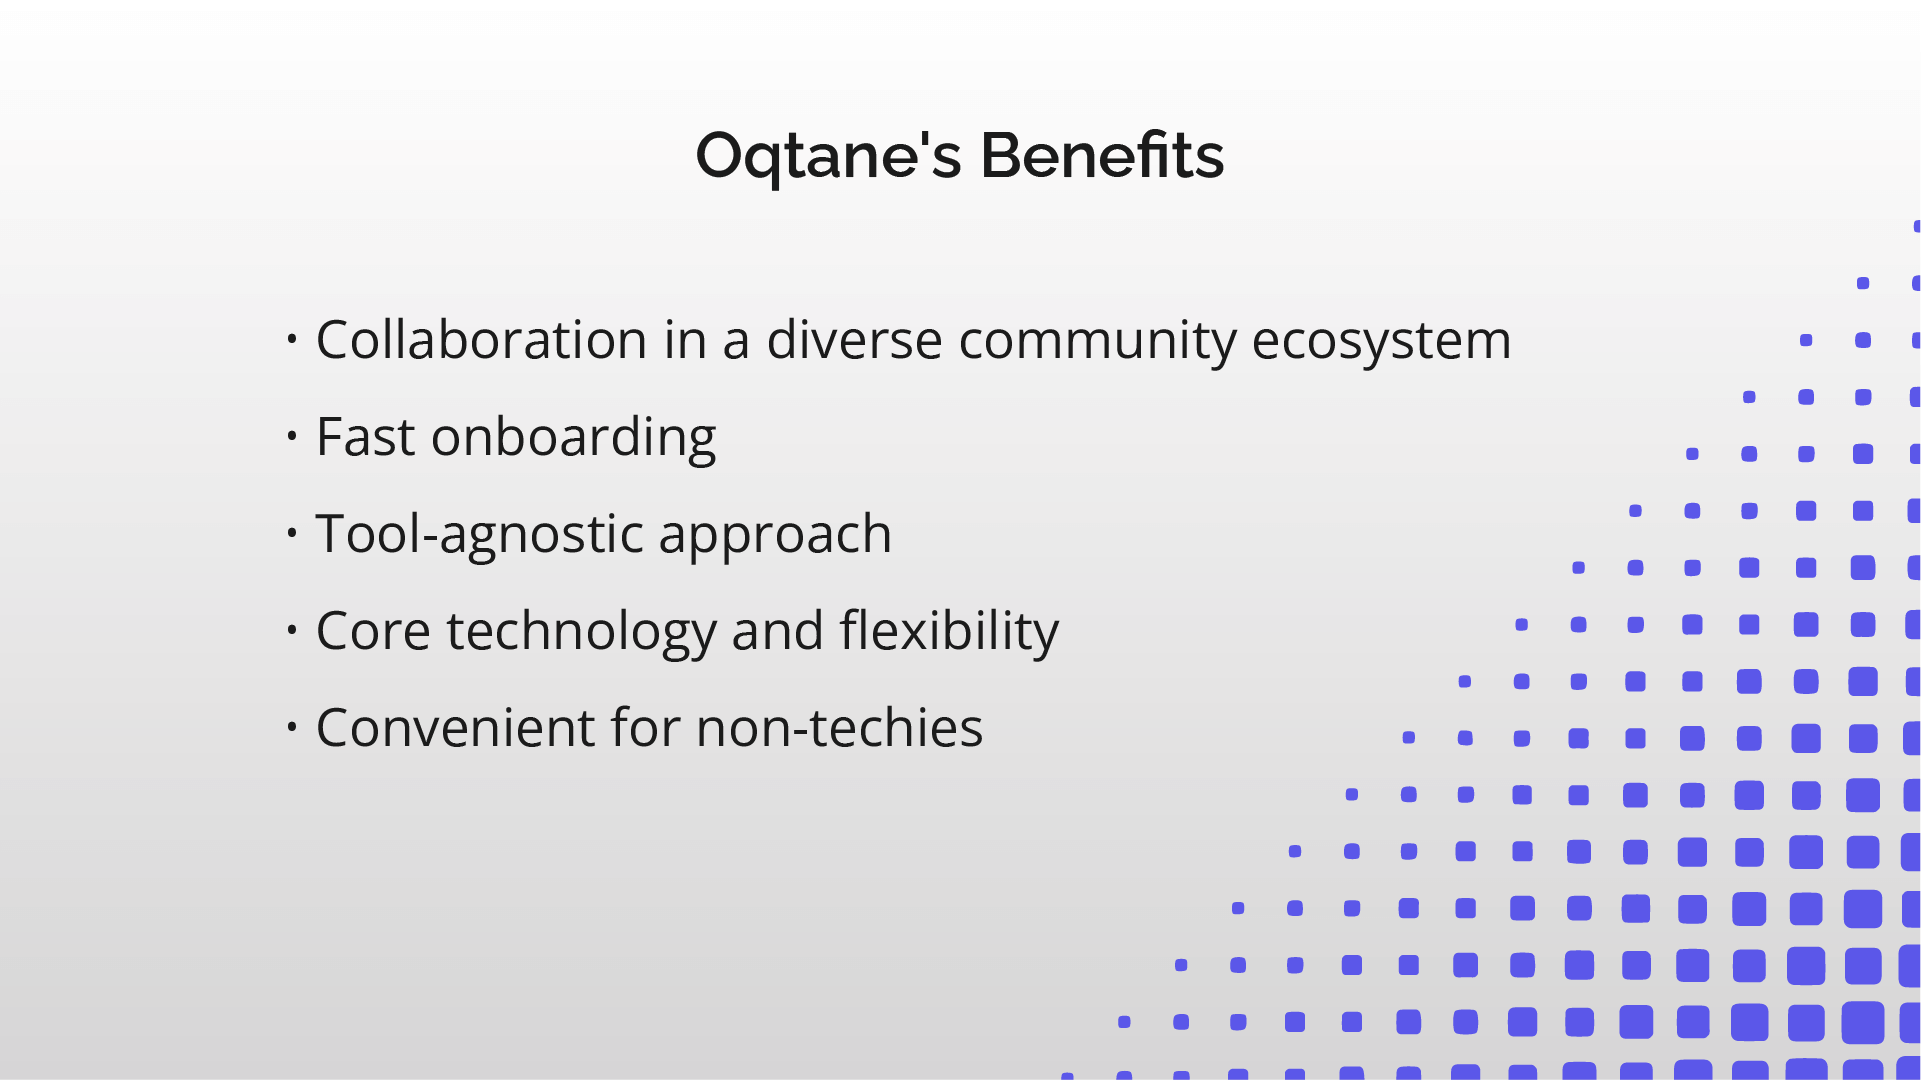 OqtaneMigration_Oqtane's_Benefits.png